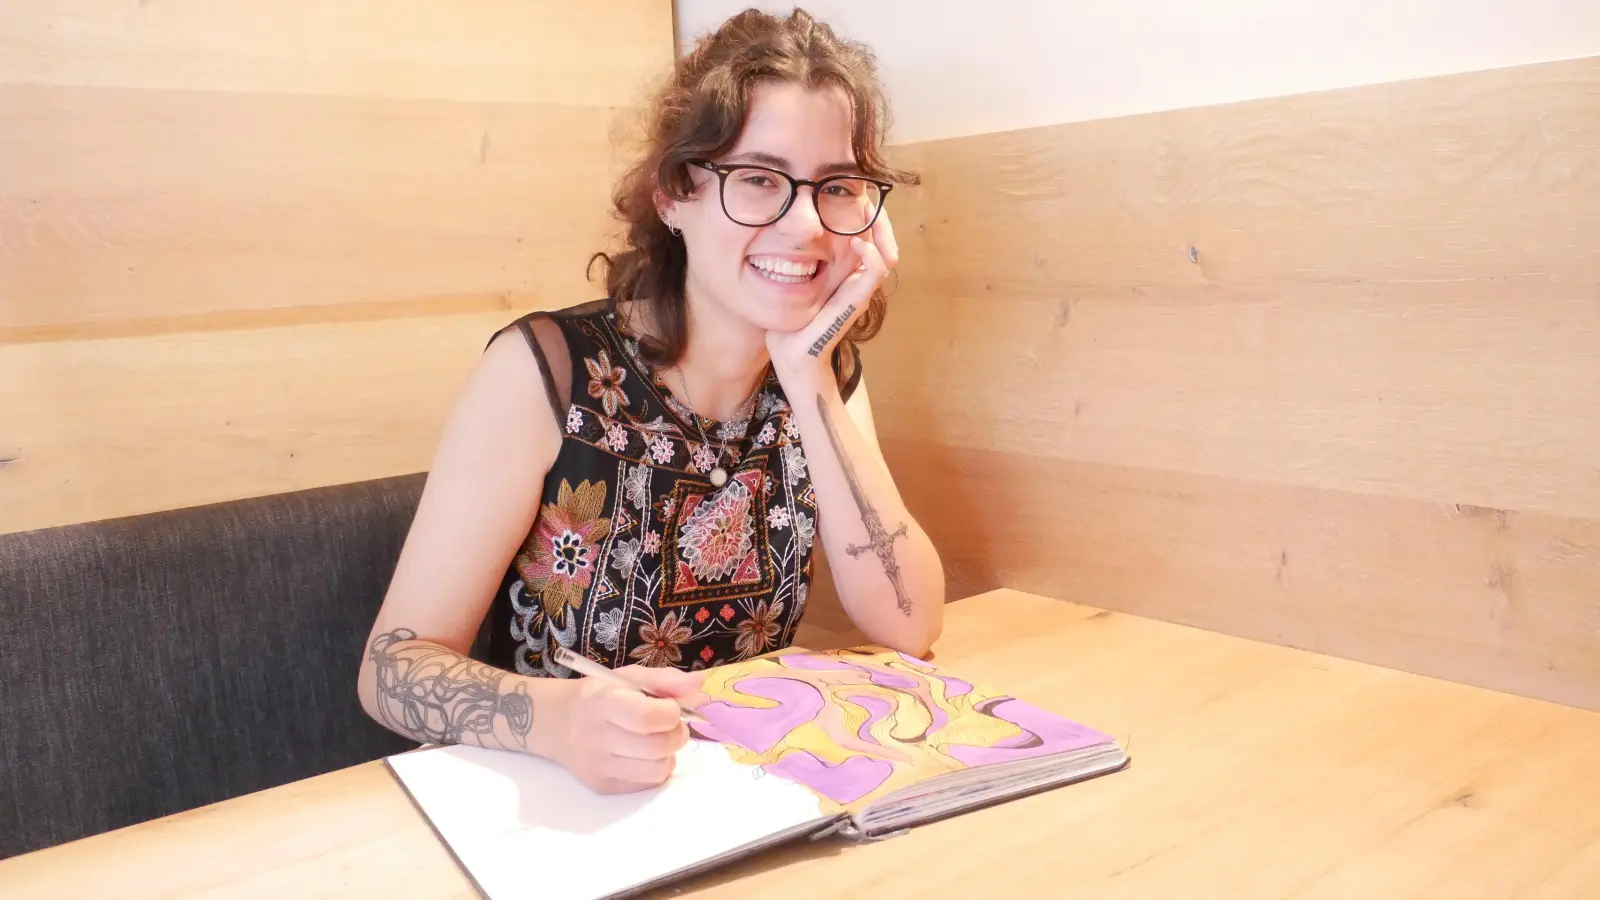 Prall gefüllt ist das Skizzenbuch der jungen Künstlerin Maria Schiepek. Die Dinkelsbühlerin studiert aktuell in Köln „Soziale Arbeit“. Vor kurzem hat sie die Leidenschaft für das Tätowieren entdeckt, bei dem sie ihre Kreativität ausleben kann. (Foto: Lisa-Maria Liebing)